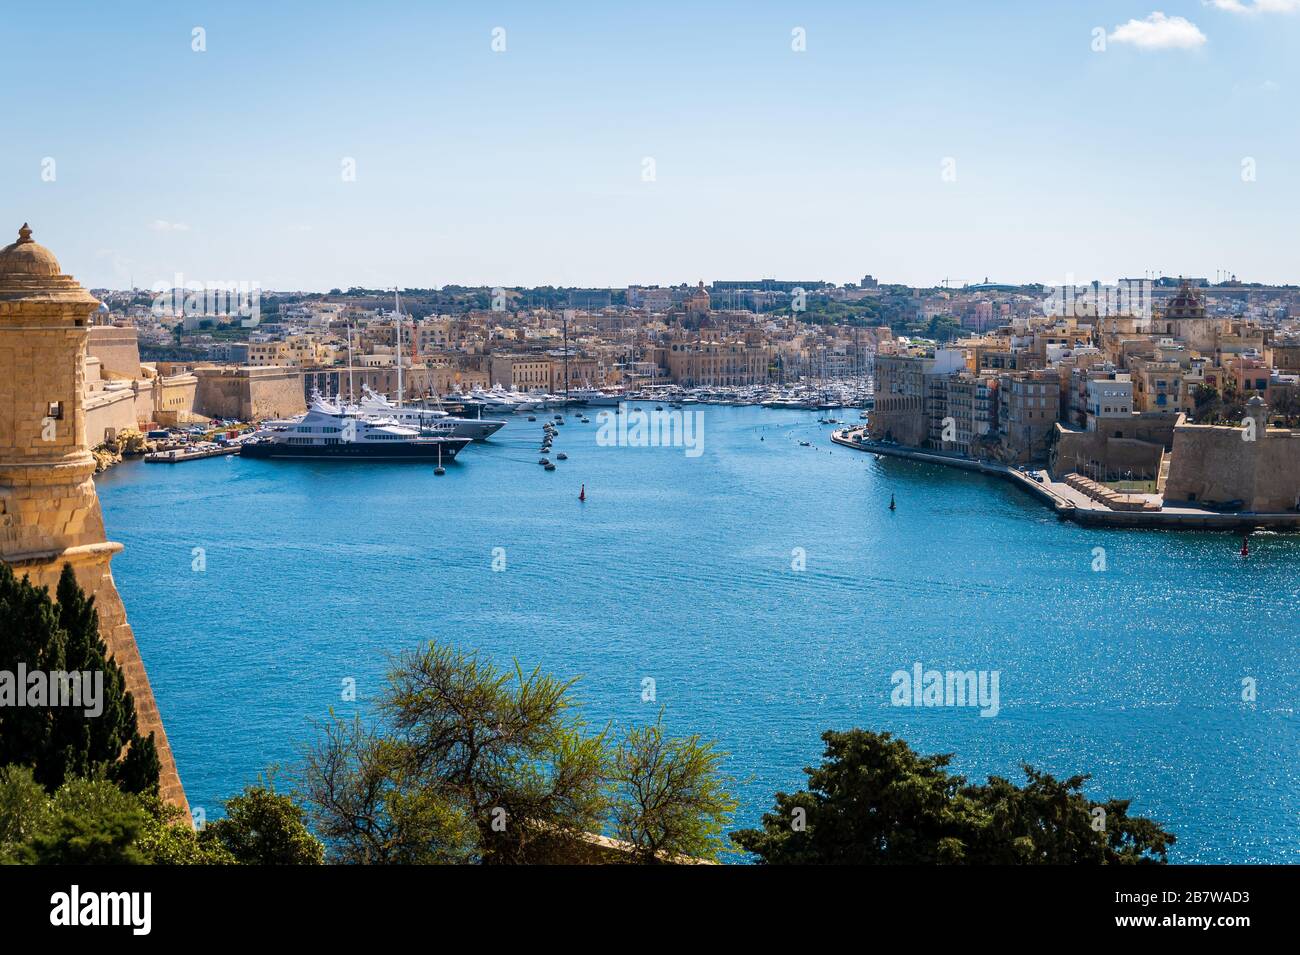 Looking towards the Three Cities from Valletta, Malta Stock Photo